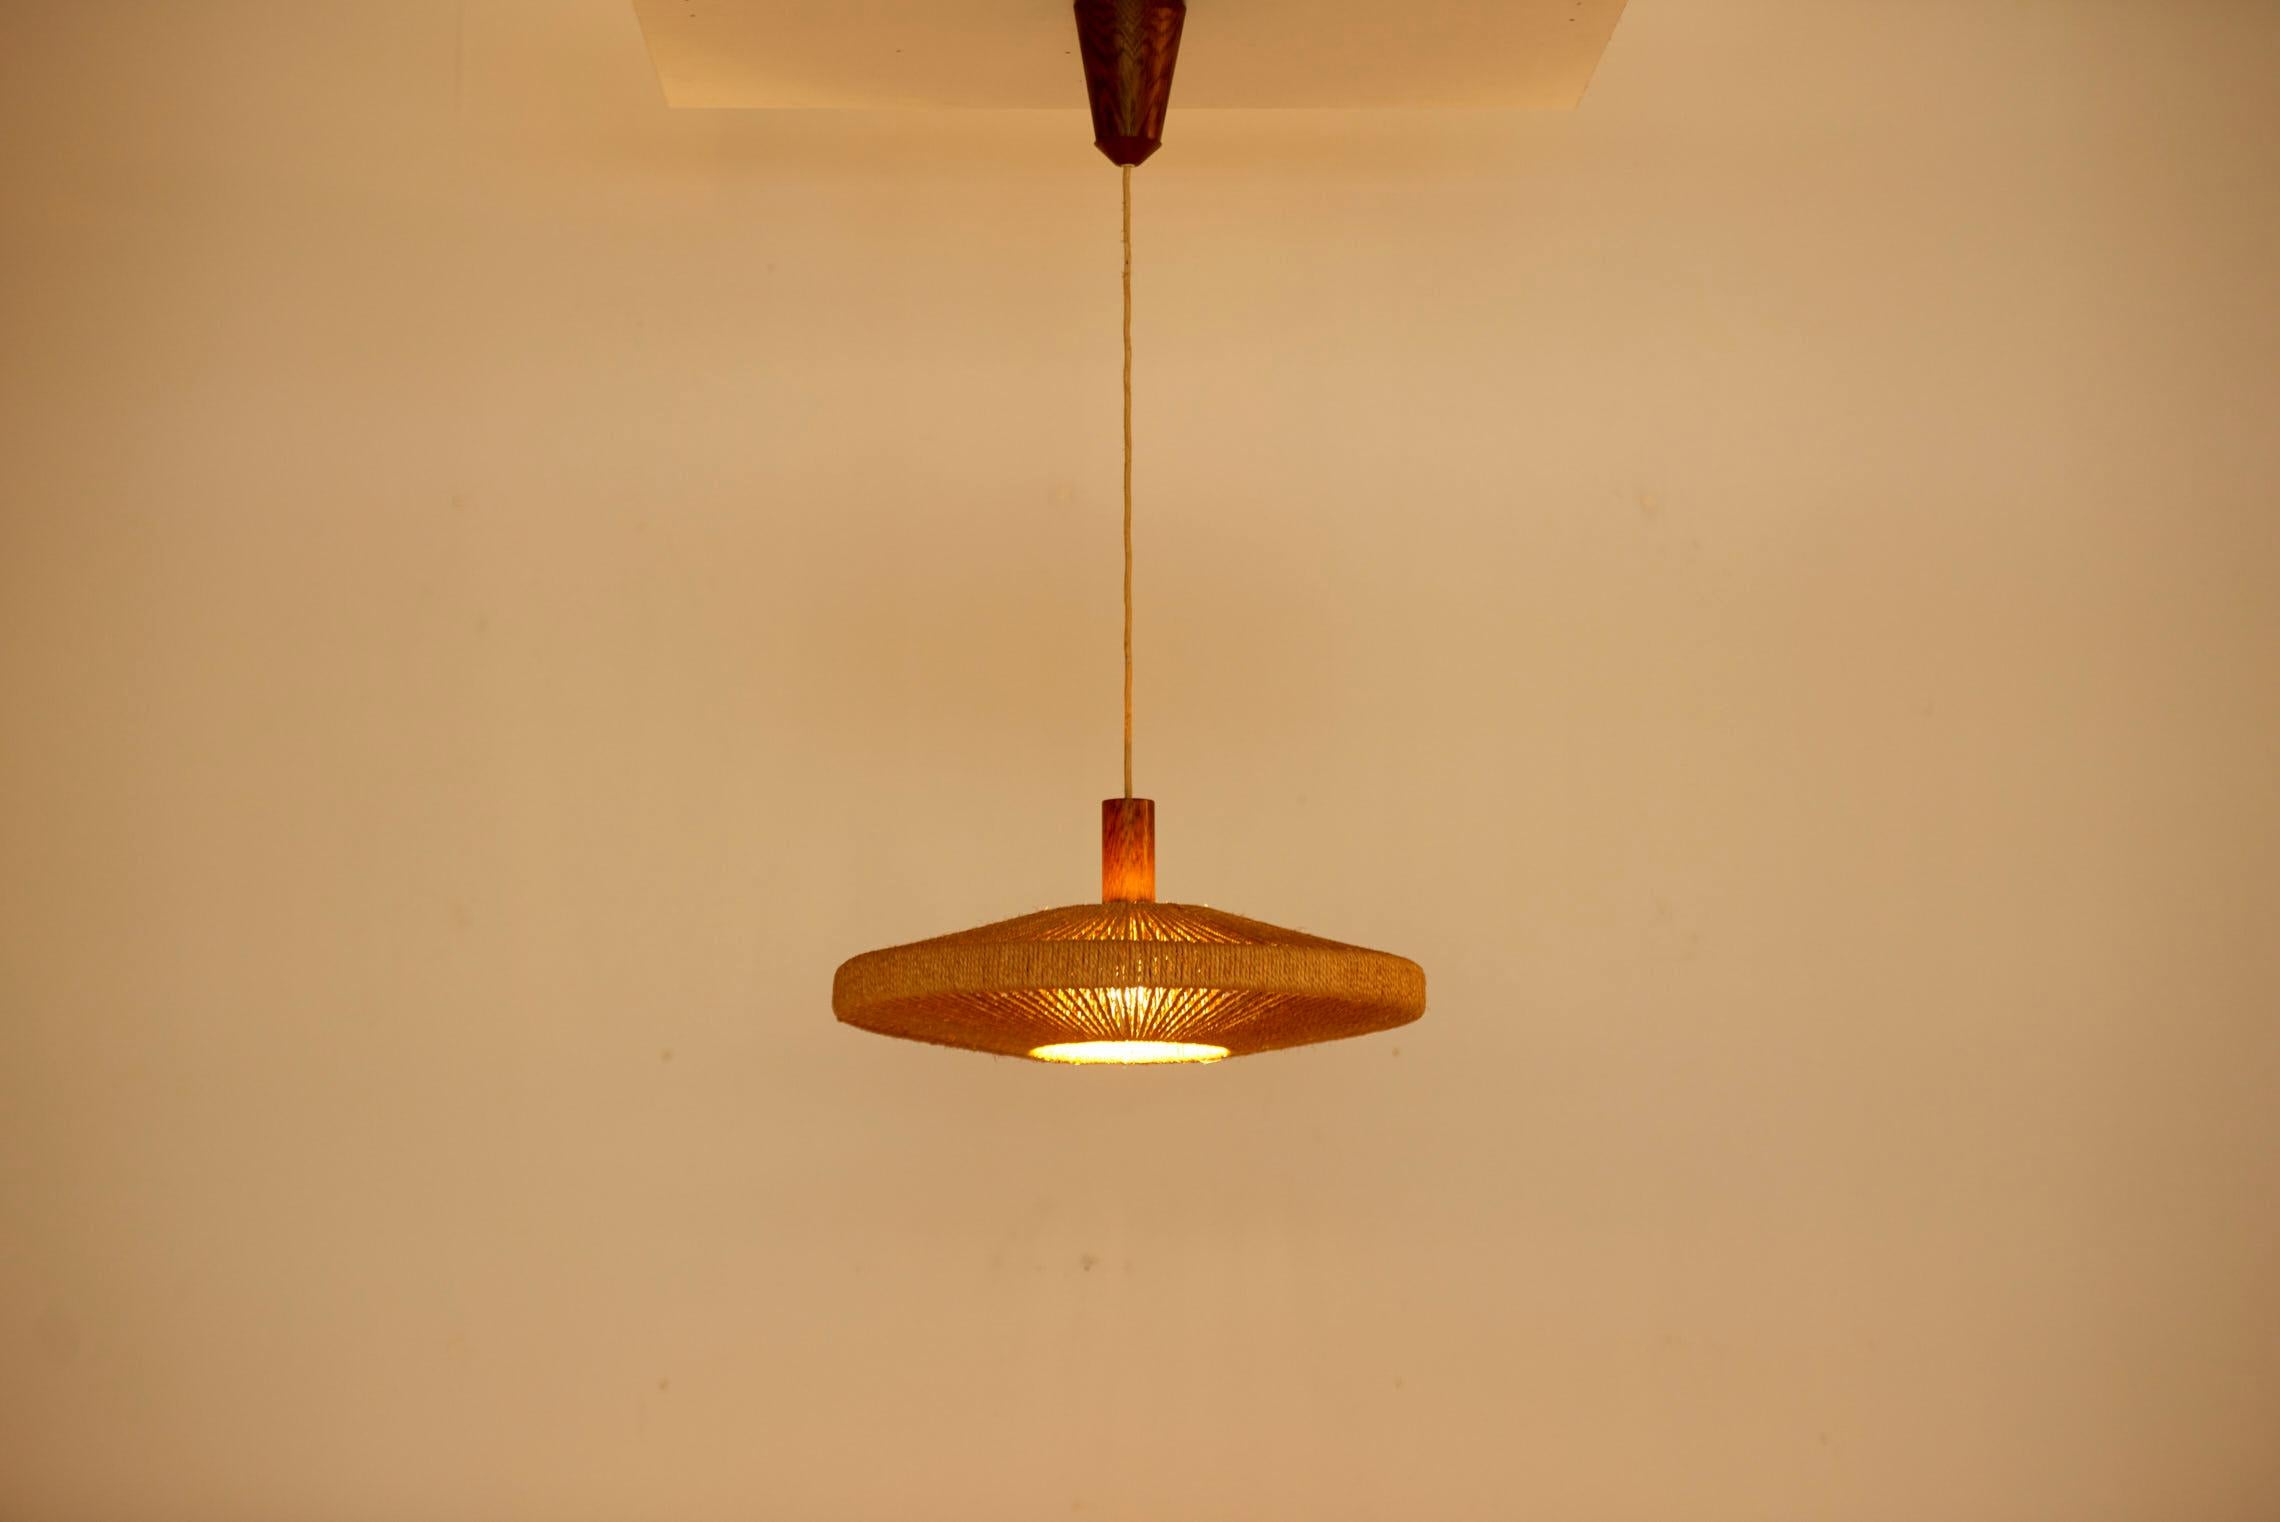 Grande lampe suspendue Temde Leuchten en sisal, Suisse, années 1950. Les mesures données pour la hauteur s'appliquent à la hauteur de l'abat-jour. 1x ampoule modèle A / E27. Remarque : la lampe doit être installée par un professionnel conformément